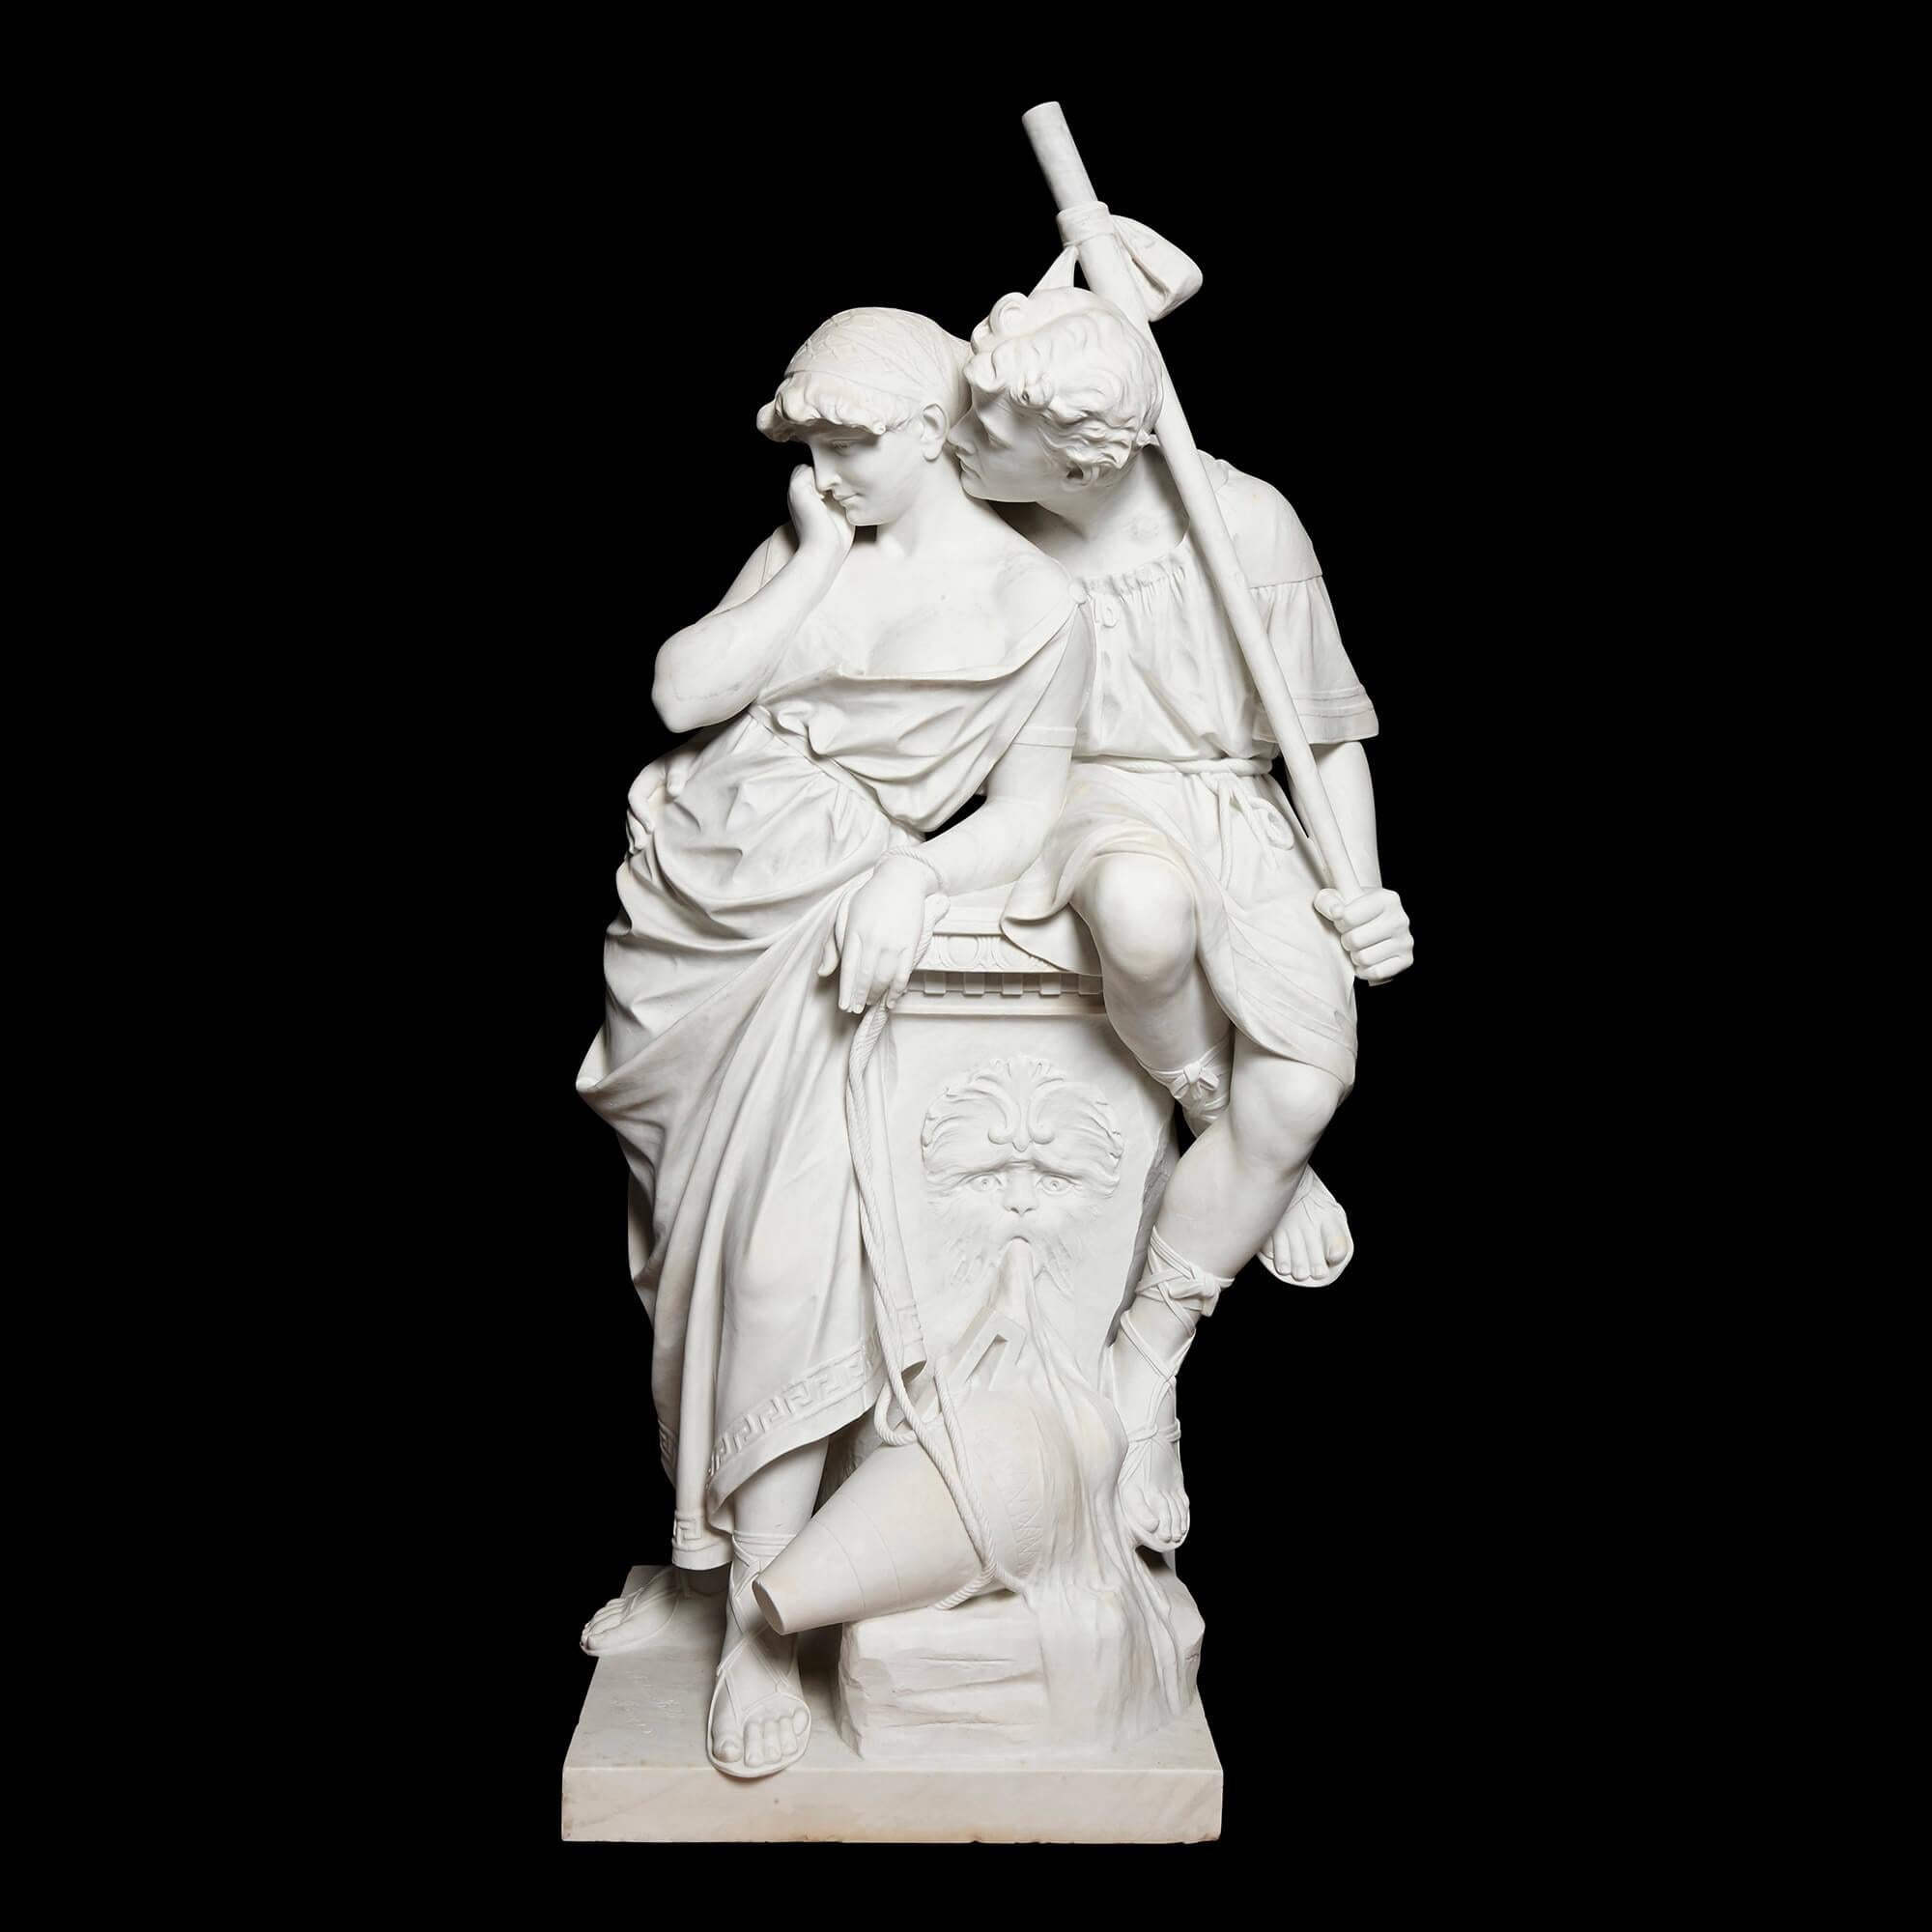 Grande sculpture en marbre représentant un couple d'amoureux, réalisée par Antonio Frilli.
Italien, fin du XIXe siècle
Mesures : Hauteur 130 cm, largeur 68 cm, profondeur 46 cm.

Ce groupe sculptural spectaculaire est l'œuvre d'Antonio Frilli,